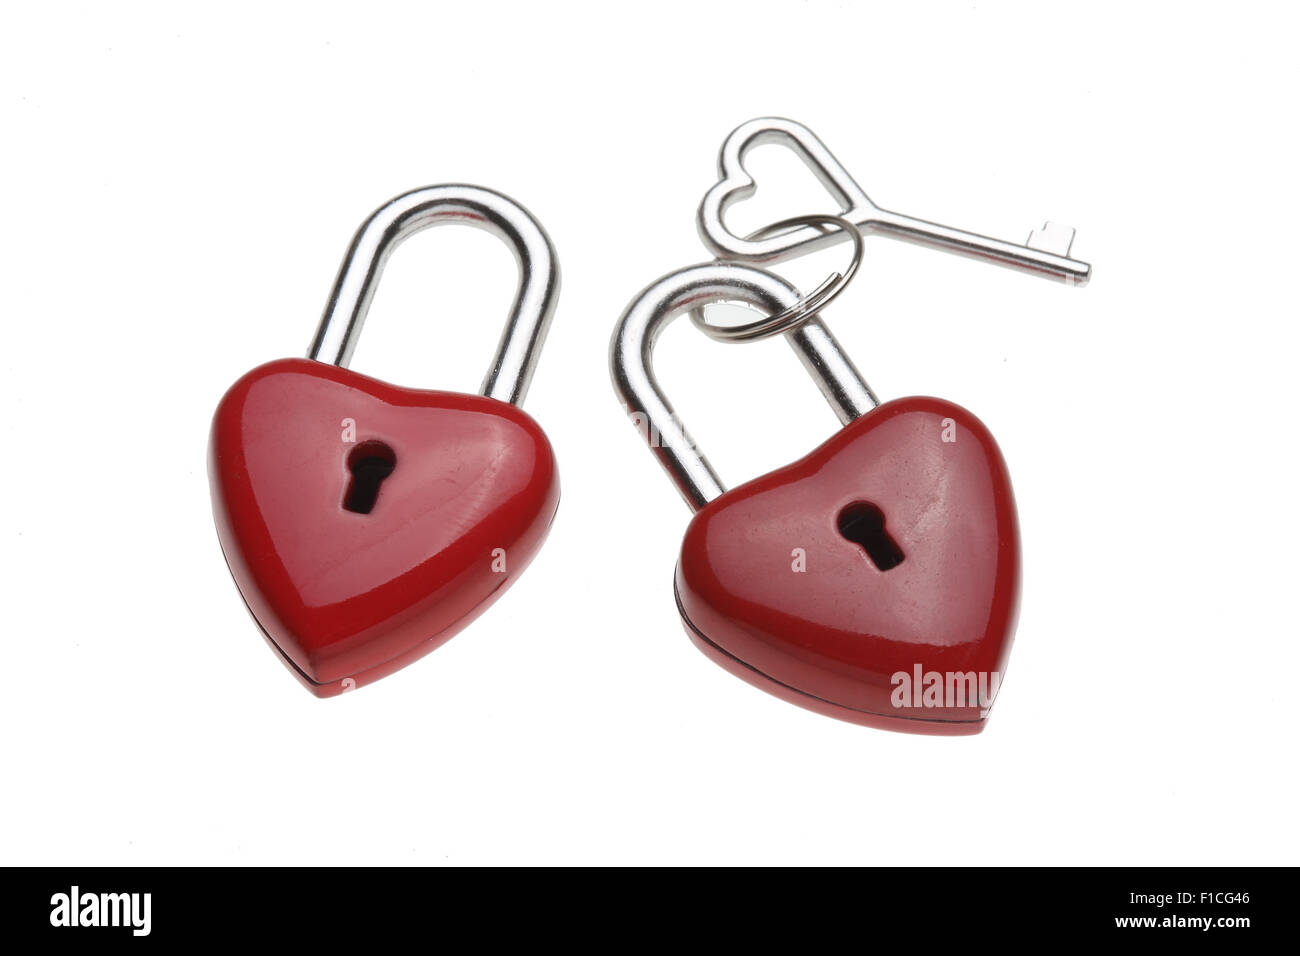 Tiny heart-shaped lock, padlock, as love lock with keys with heart-shaped handle Stock Photo